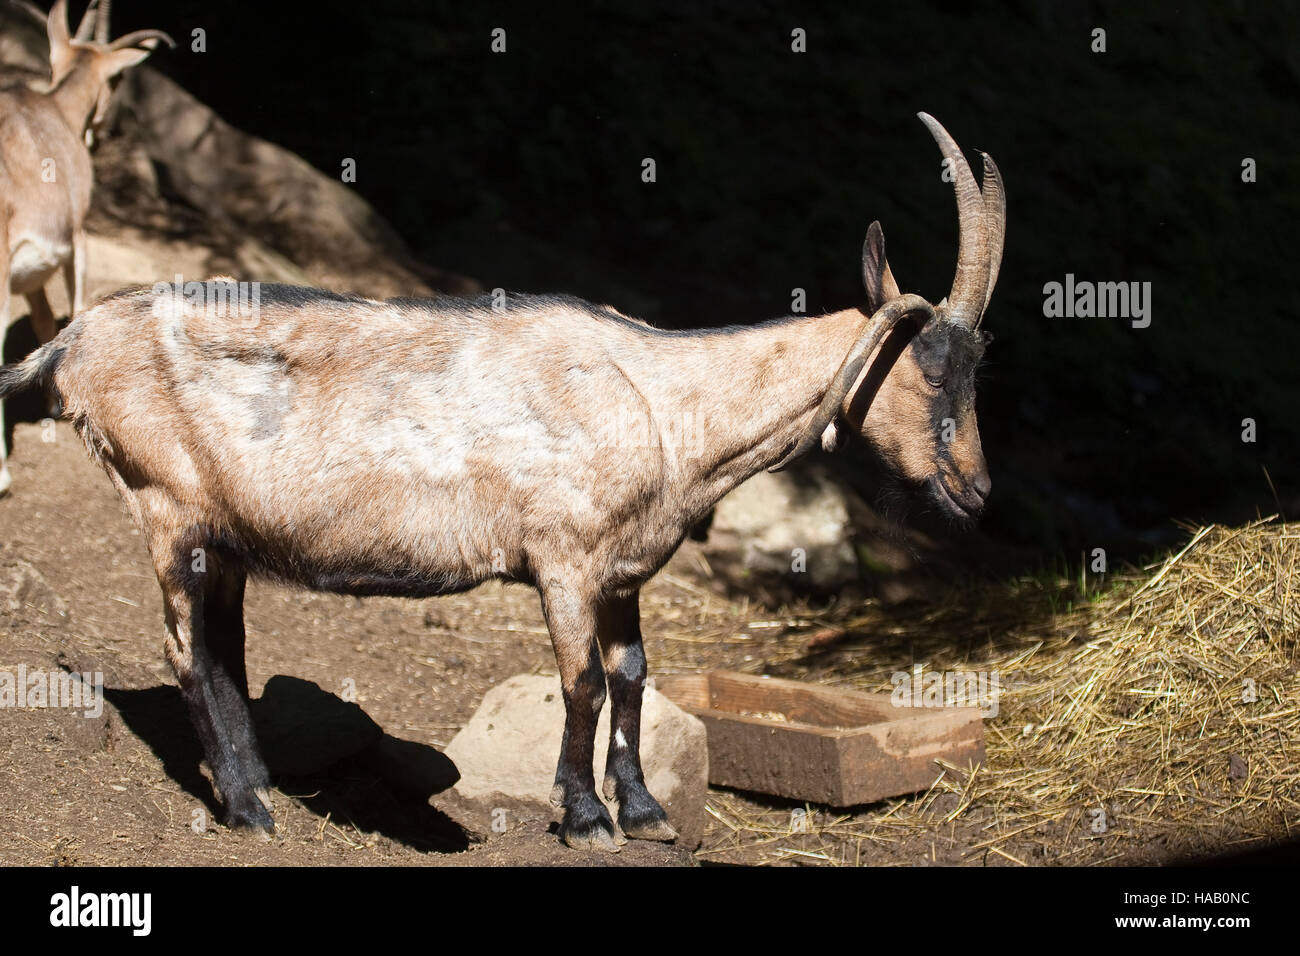 Vierhornziege, Vierhorn-Ziege, Hausziege, Ziege, Haustierrasse, Capra aegagrus hircus, domestic goat, Four Horn Goat, Four-Horn-Goat Stock Photo